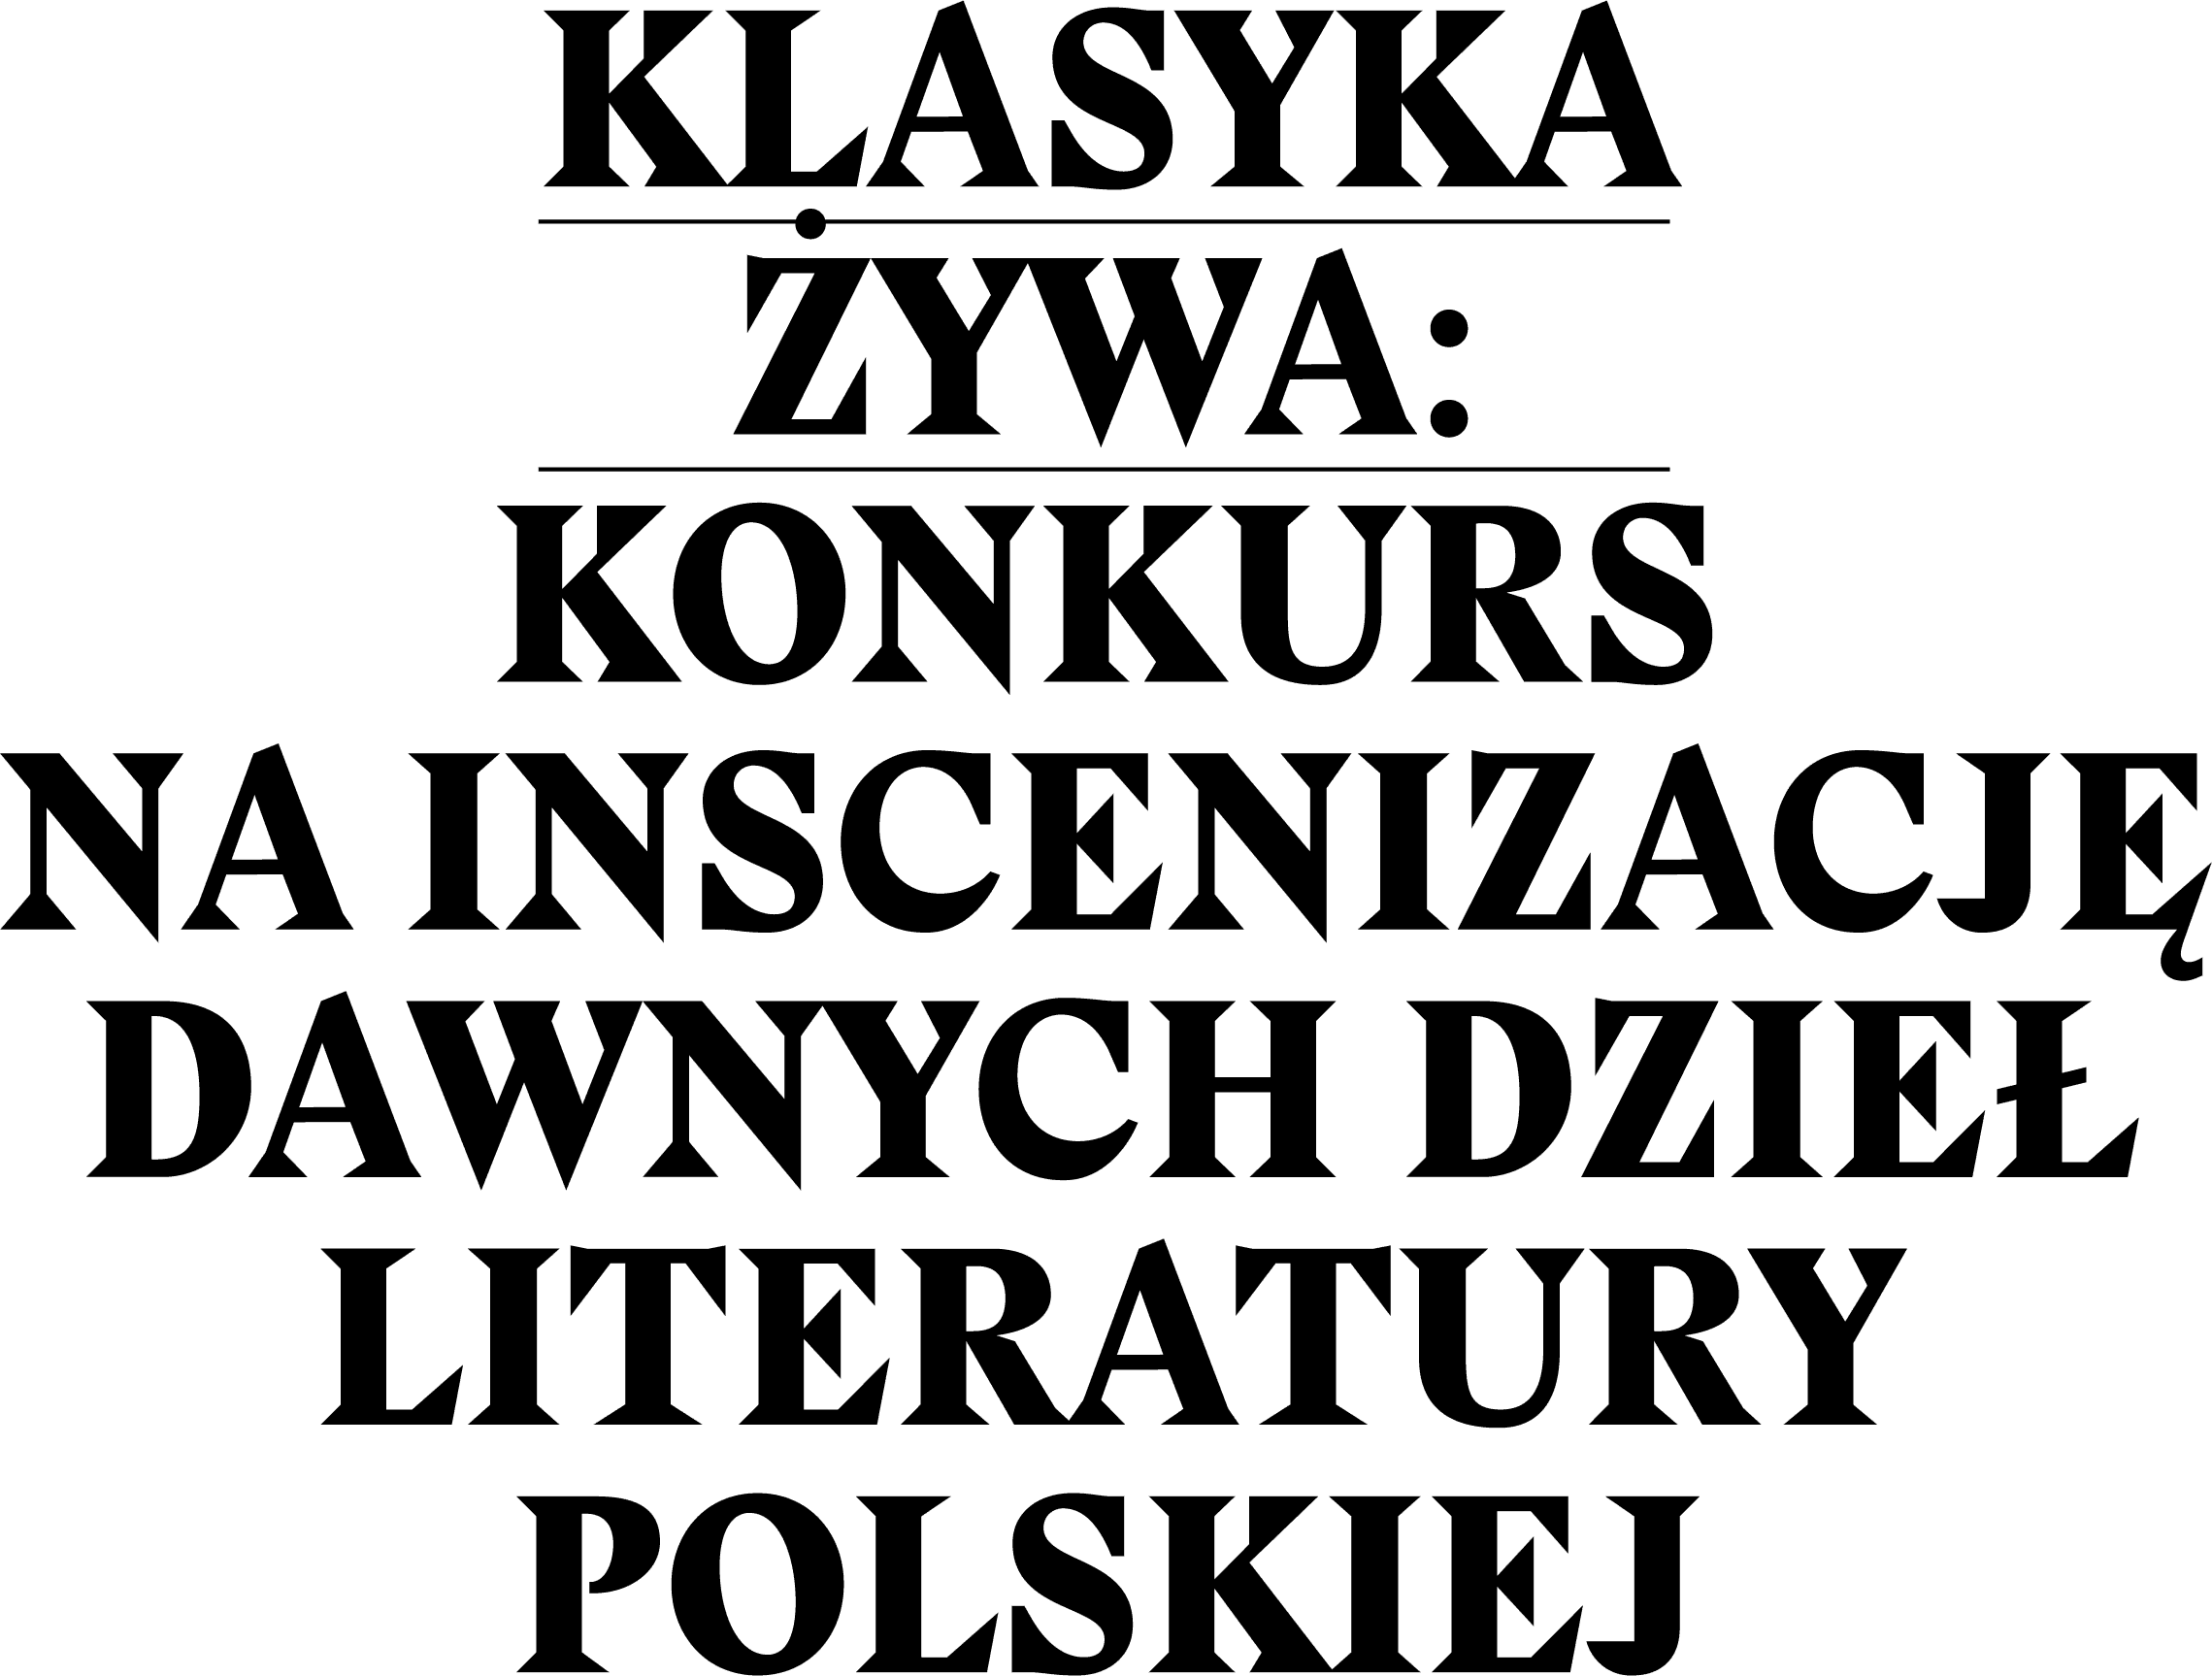 Klasyka Żywa: Konkurs na inscenizację dawnych dzieł literatury polskiej